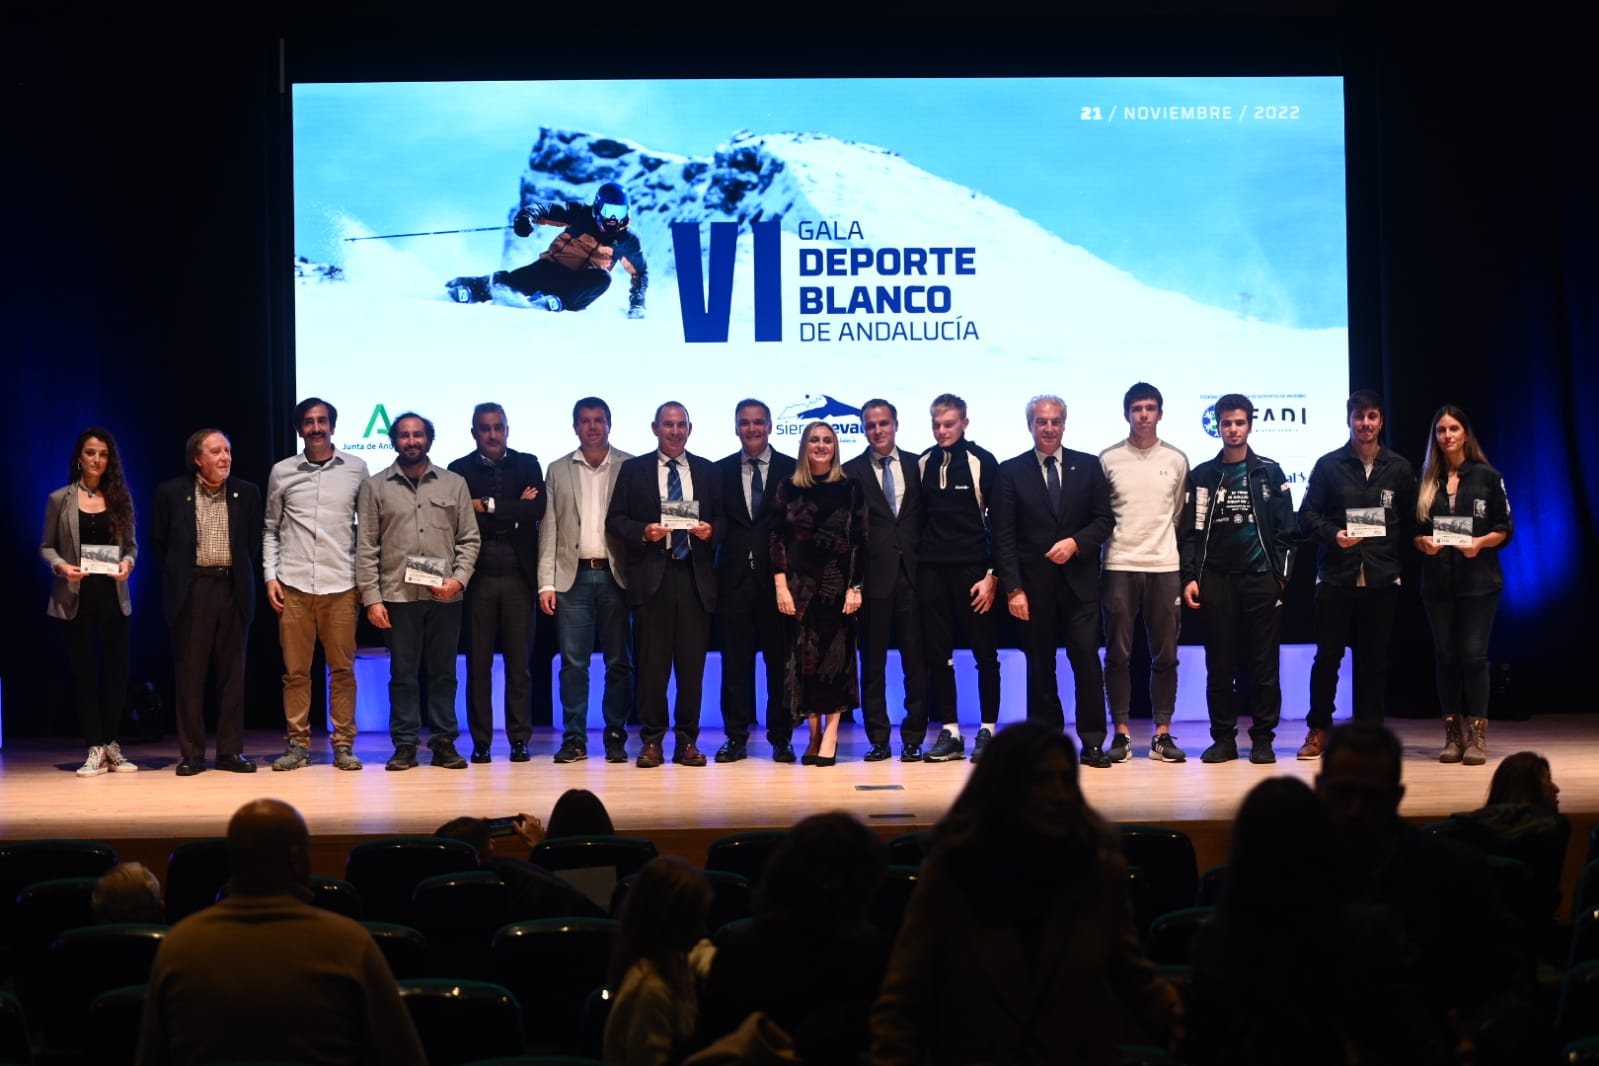 La Gala del Deporte Blanco reconoce a la esquiadora Ana Alonso, a dos snowboarders, a la cátedra del Derecho del Deporte de la UGR y al club Monachil por ‘rescatar’ a 45 esquiadores jóvenes de la Guerra de Ucrania 